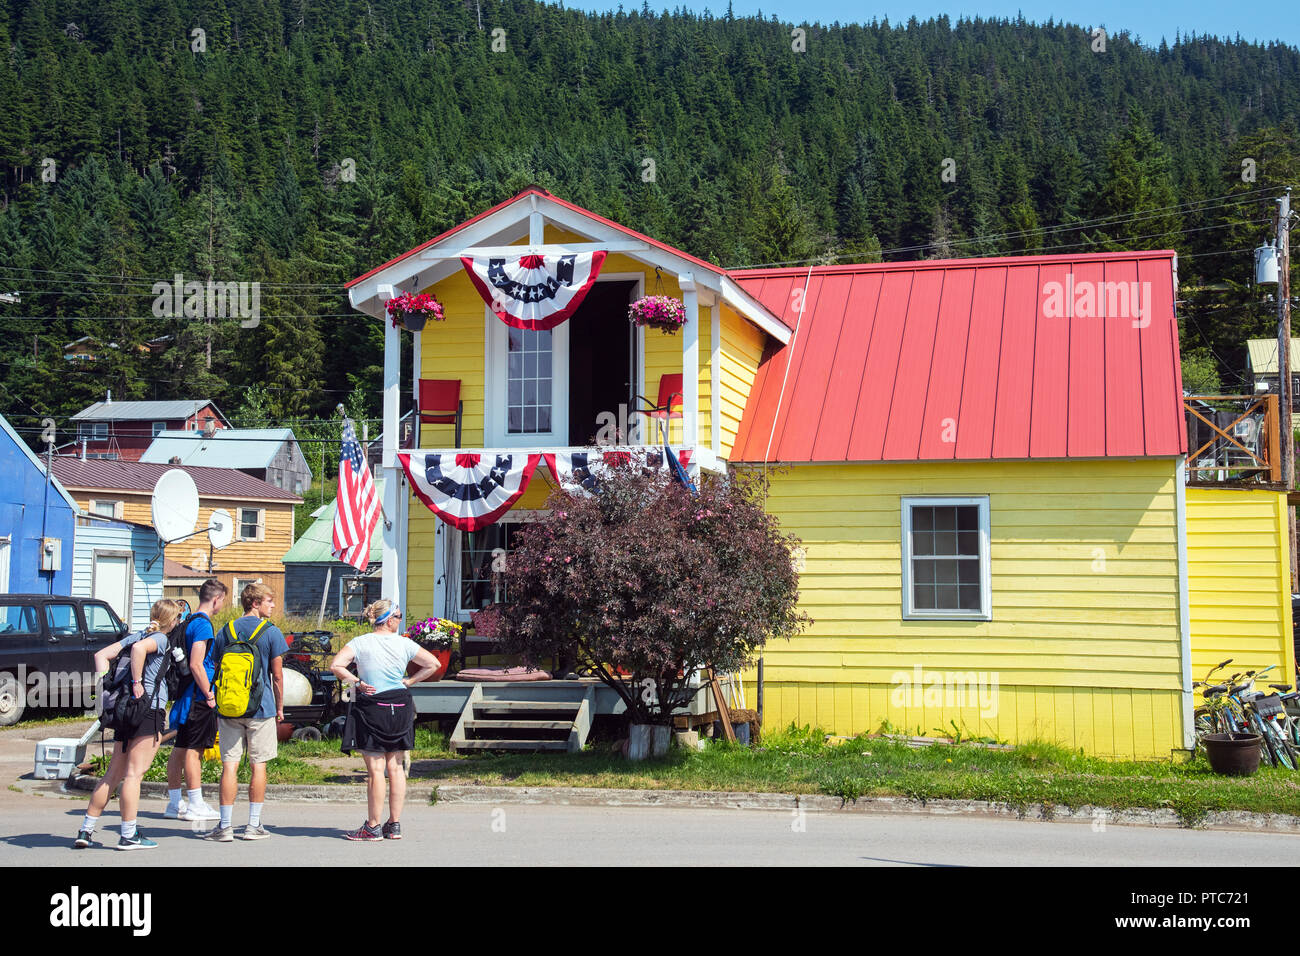 Groupe d'admirer des maisons en bois colorées avec drapeaux, Amecan Hoonah, Alaska, USA Banque D'Images